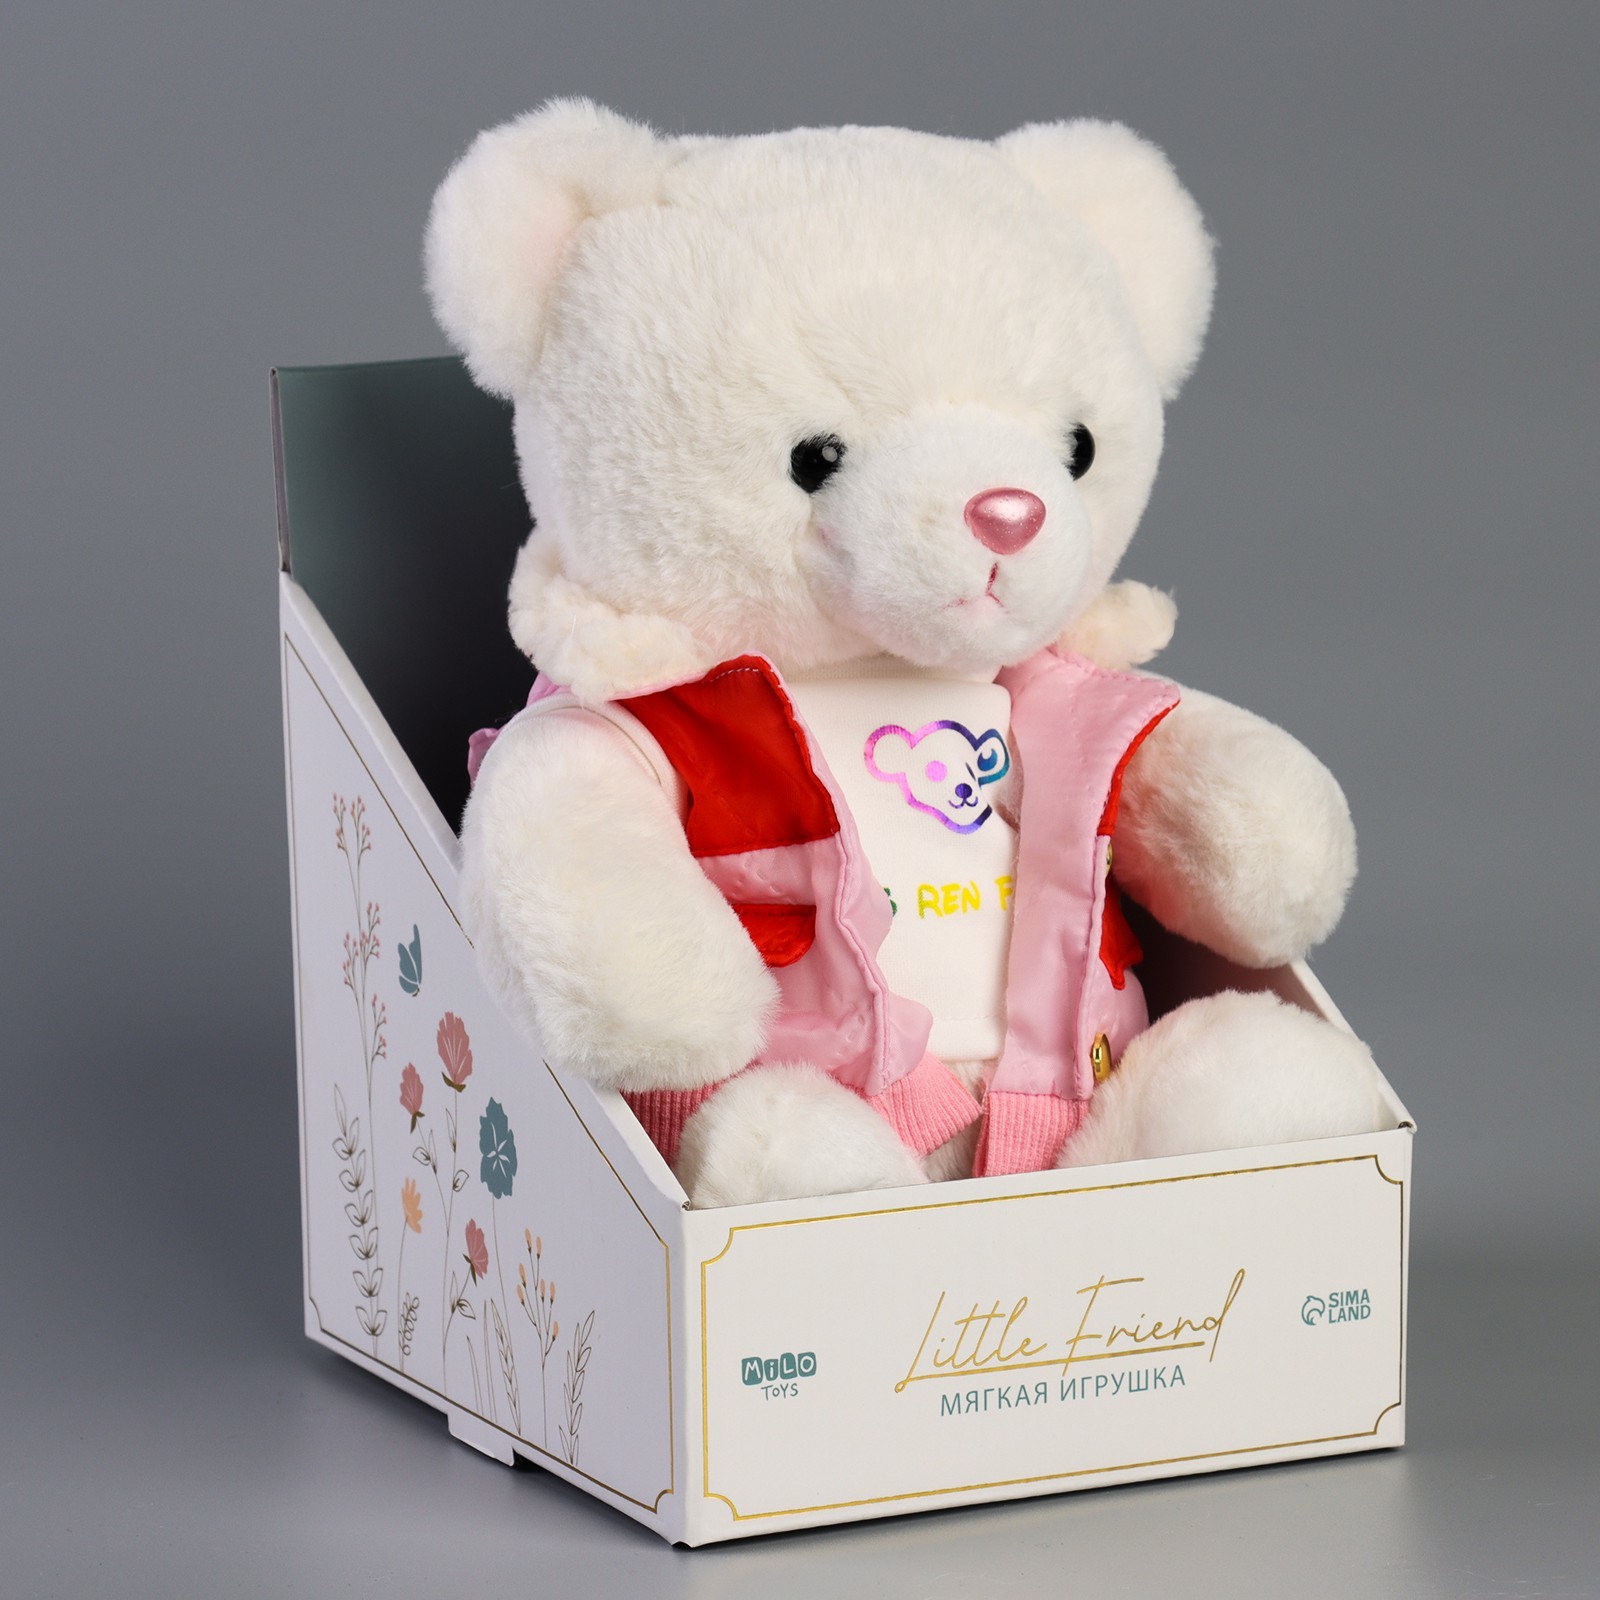 Мягкая игрушка Milo toys Little Friend 9905633, мишка в розовой курточке